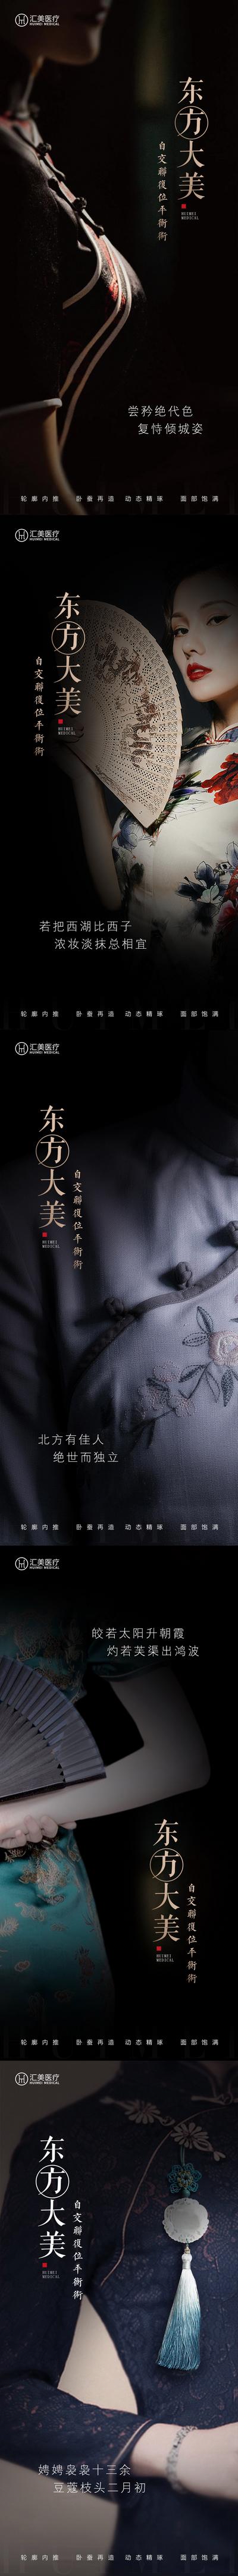 【南门网】海报 医美 整形 东方 旗袍 美学 质感 系列